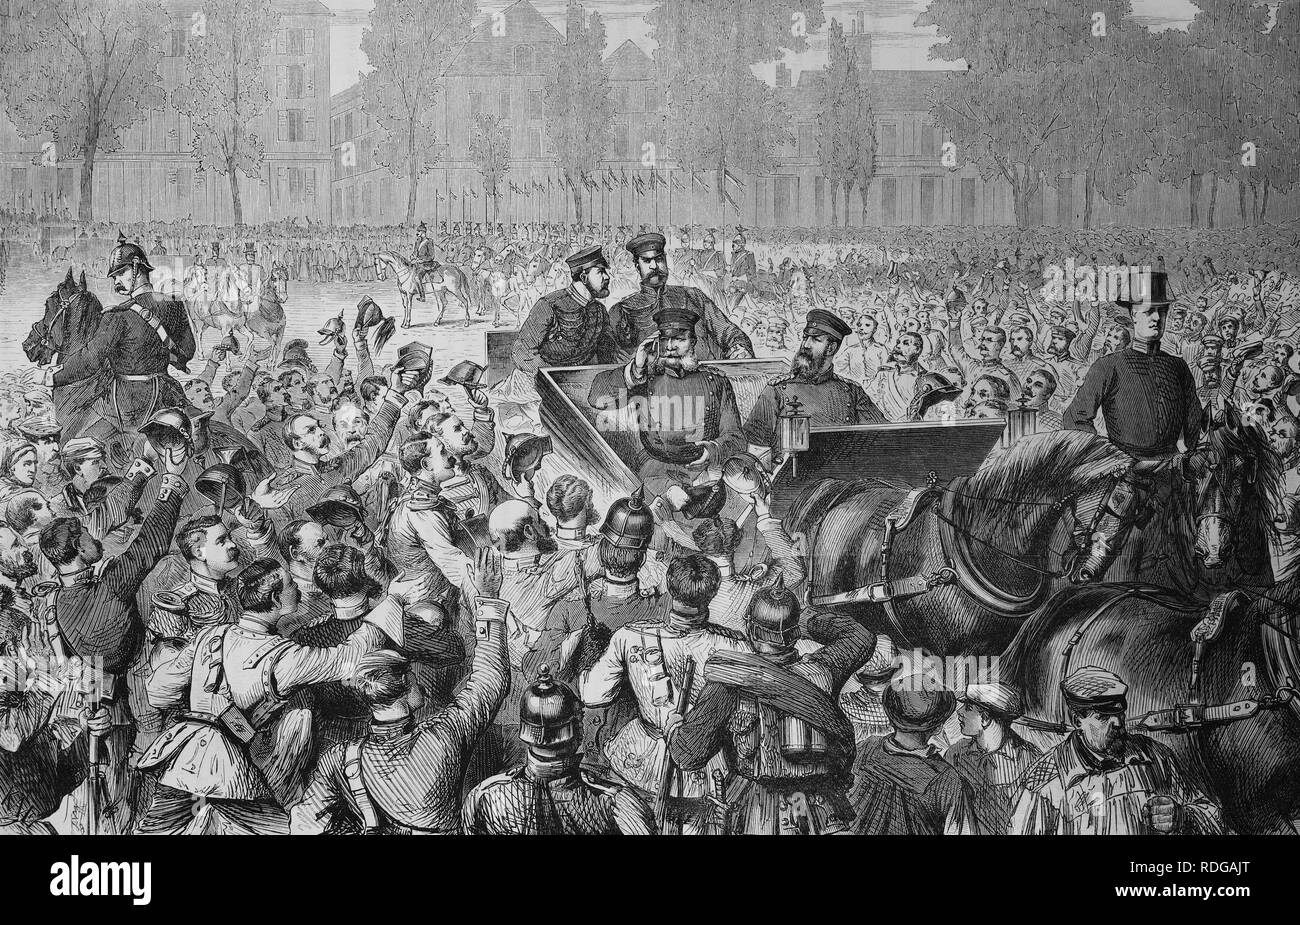 Ankunft von König Wilhelm I. von Preußen in Versailles, 1550 Kriegschronik 1870-1871, Illustrierte Krieg Chronik 1870 - Stockfoto